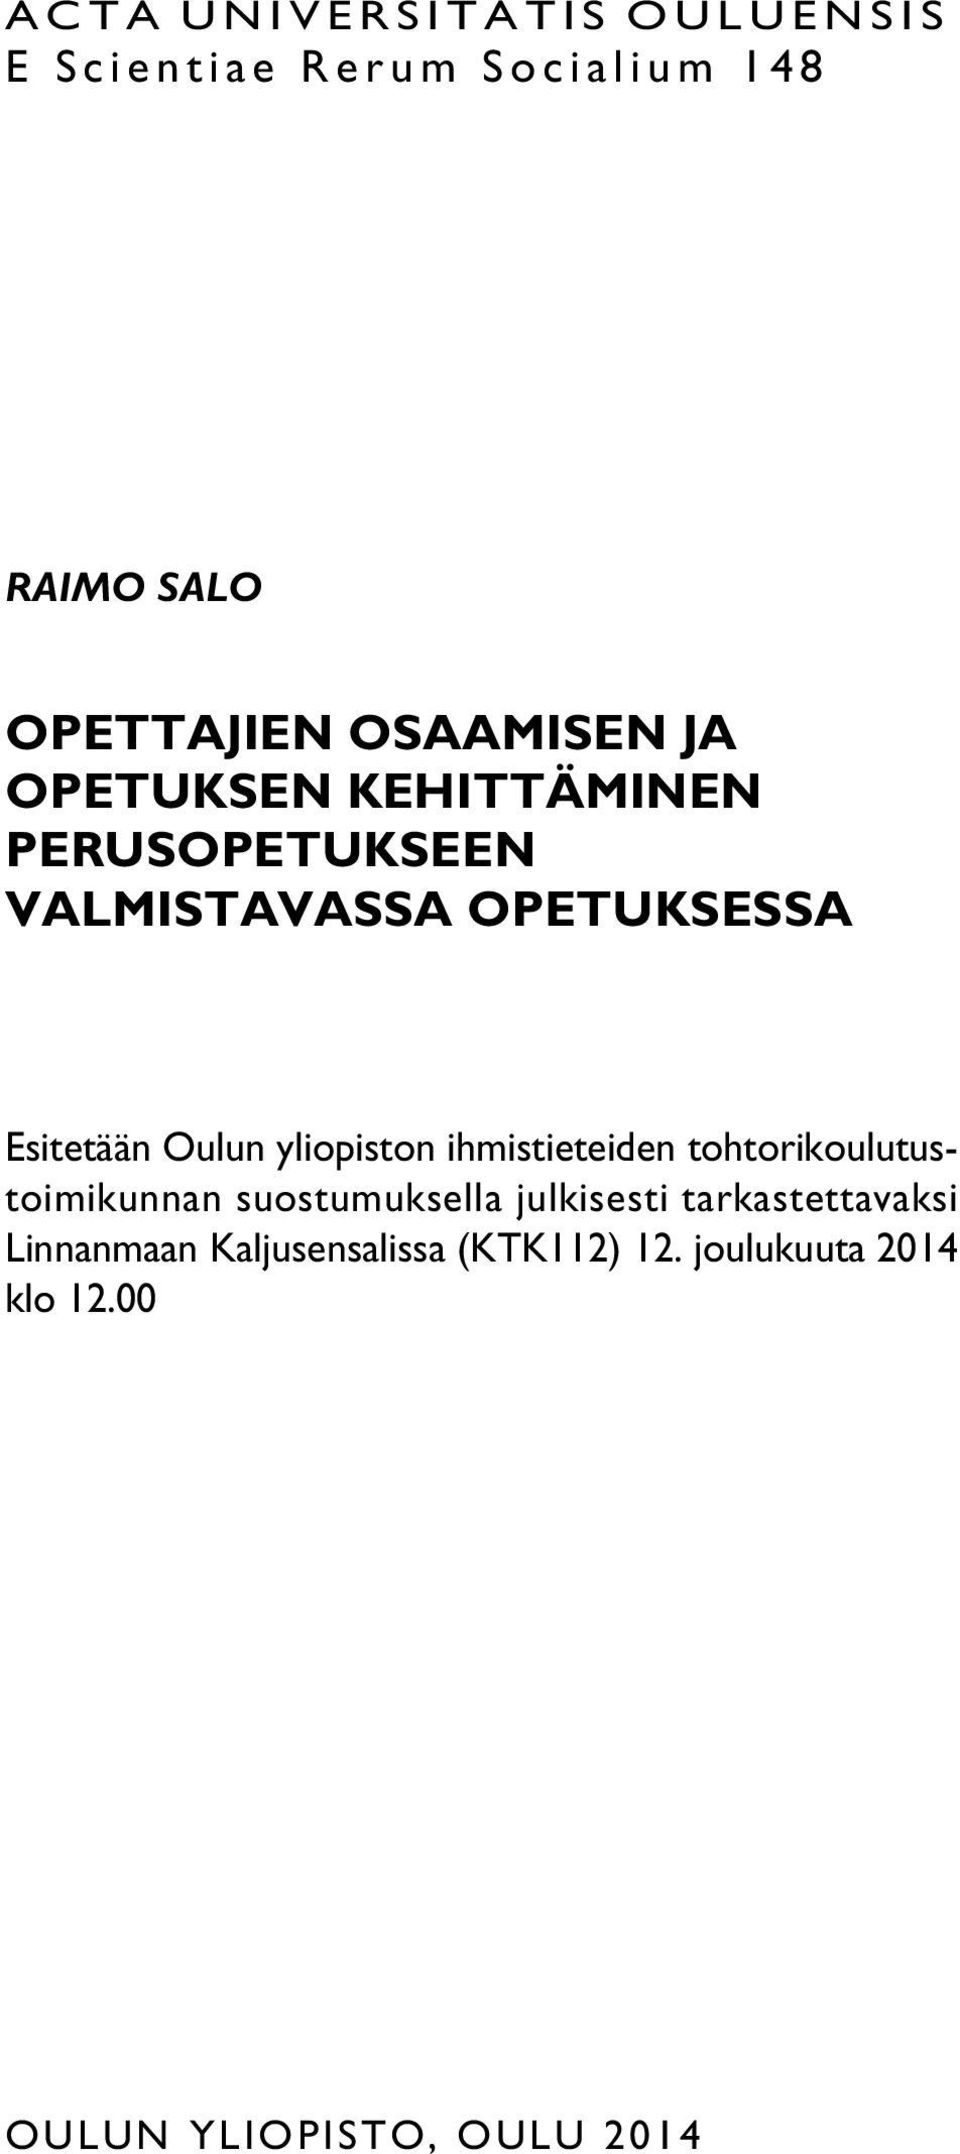 Oulun yliopiston ihmistieteiden tohtorikoulutustoimikunnan suostumuksella julkisesti